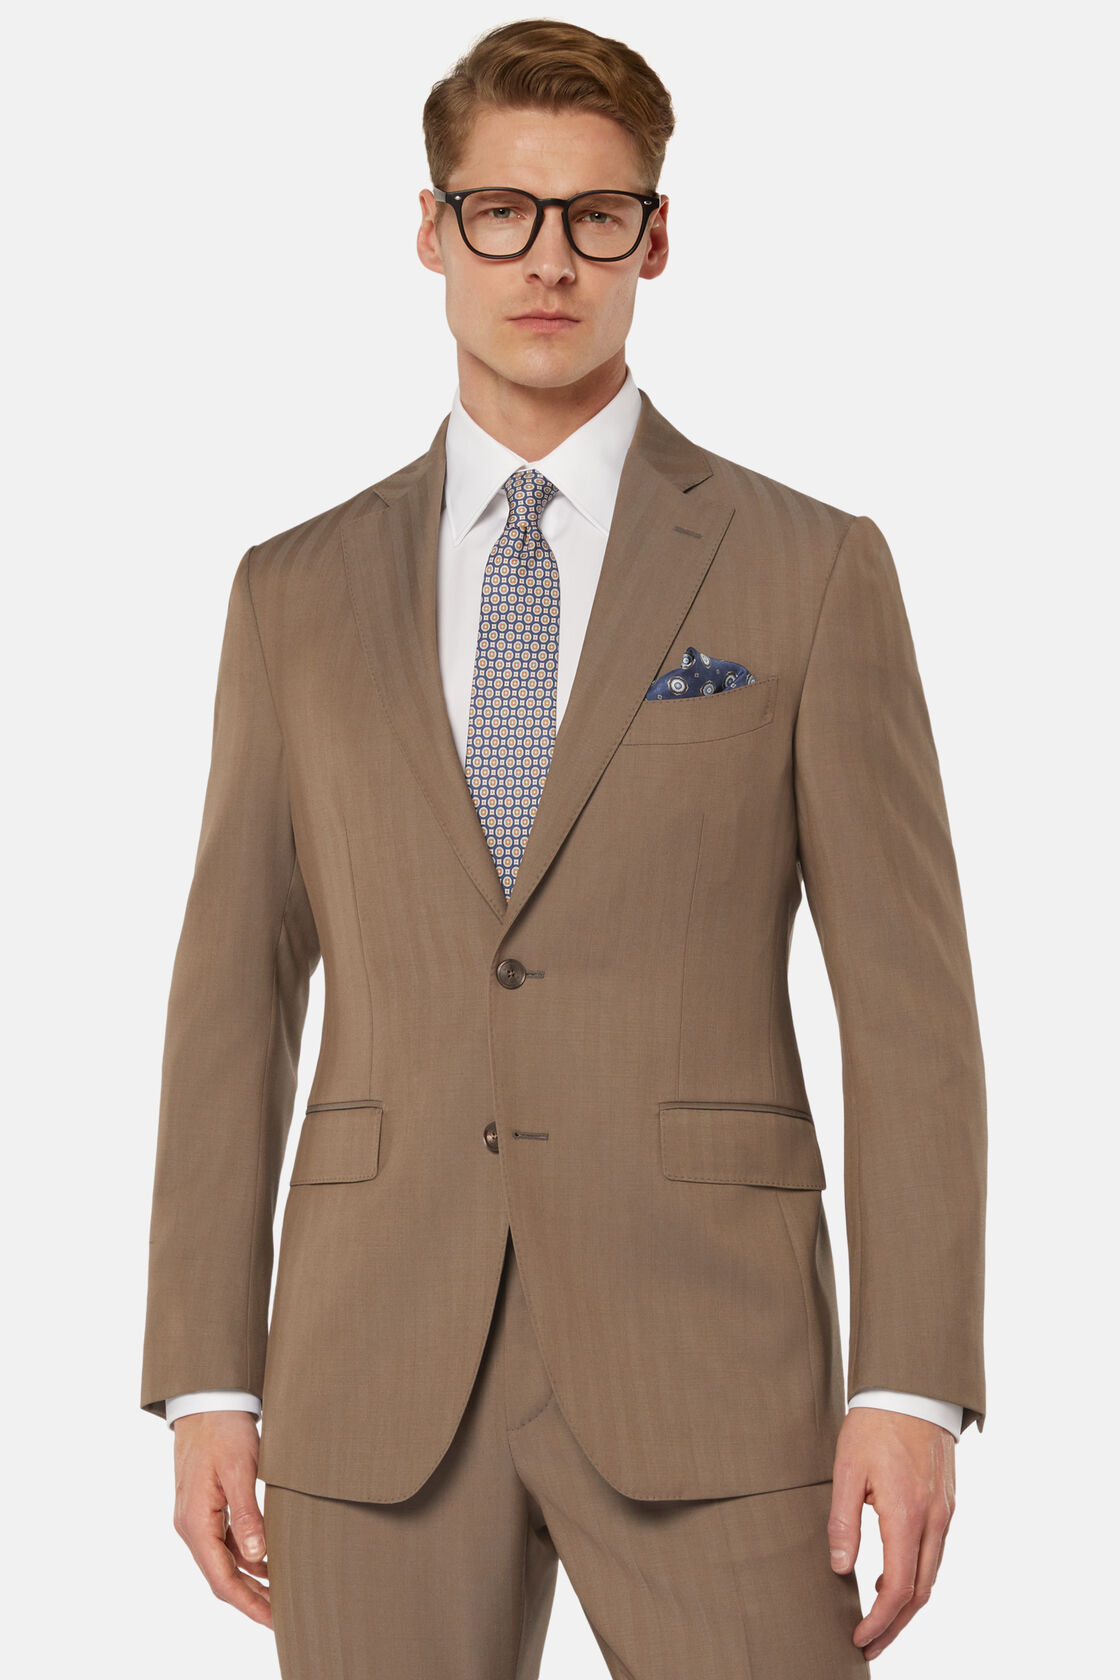 Κοστούμι ψαροκόκαλο από καθαρό μαλλί Super 130 σε γκρι ανοιχτό χρώμα, Taupe, hi-res